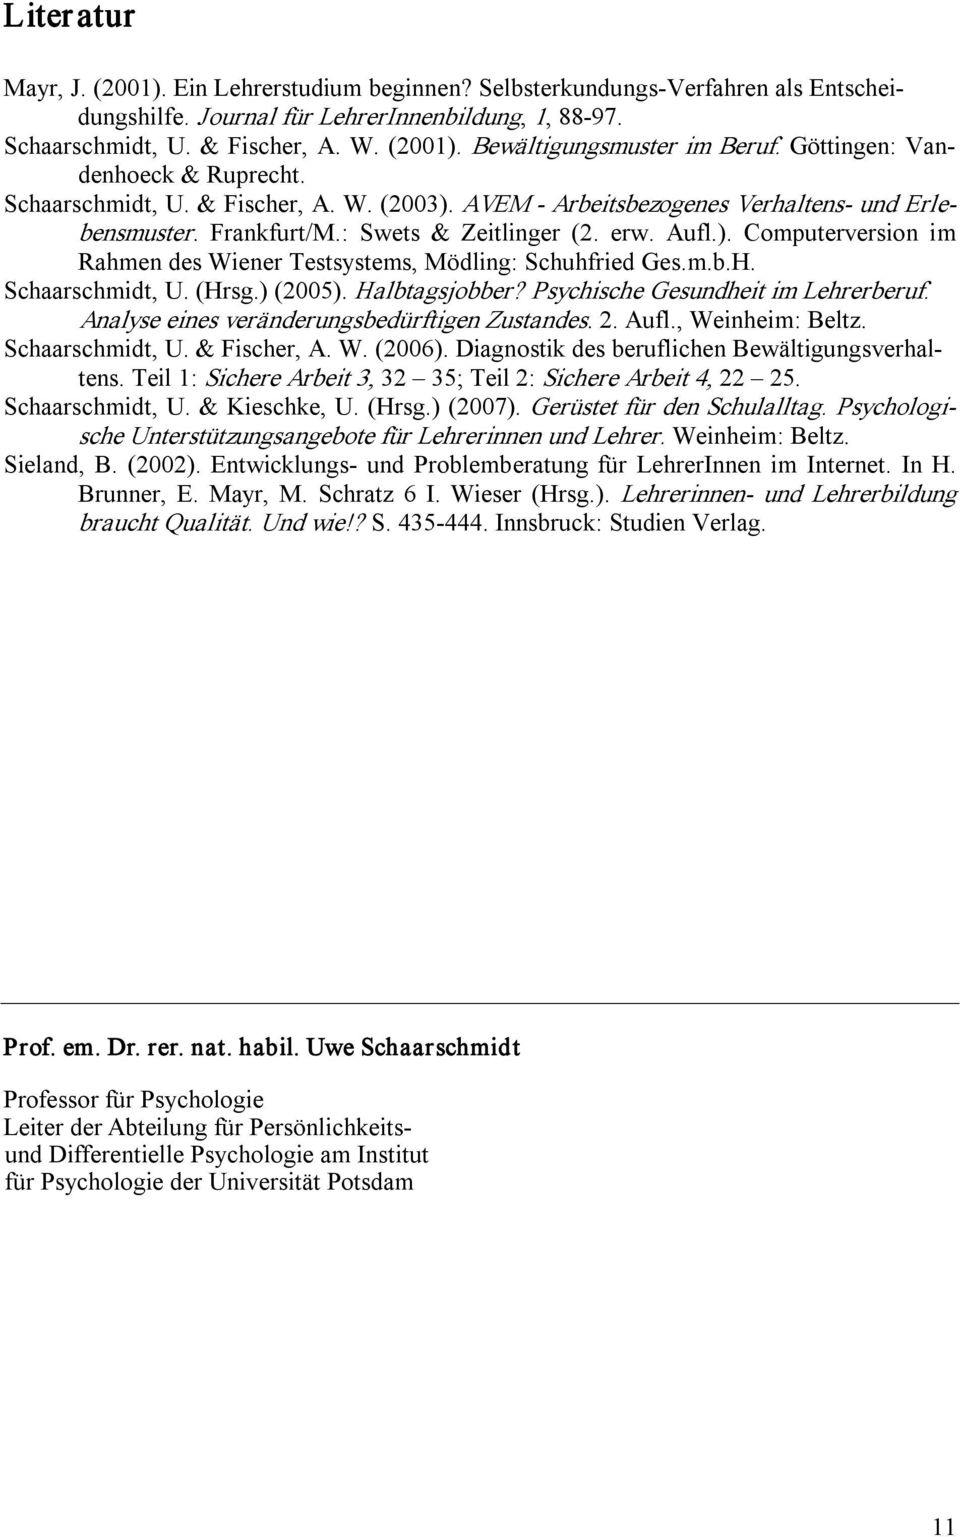 m.b.H. Schaarschmidt, U. (Hrsg.) (2005). Halbtagsjobber? Psychische Gesundheit im Lehrerberuf. Analyse eines veränderungsbedürftigen Zustandes. 2. Aufl., Weinheim: Beltz. Schaarschmidt, U. & Fischer, A.